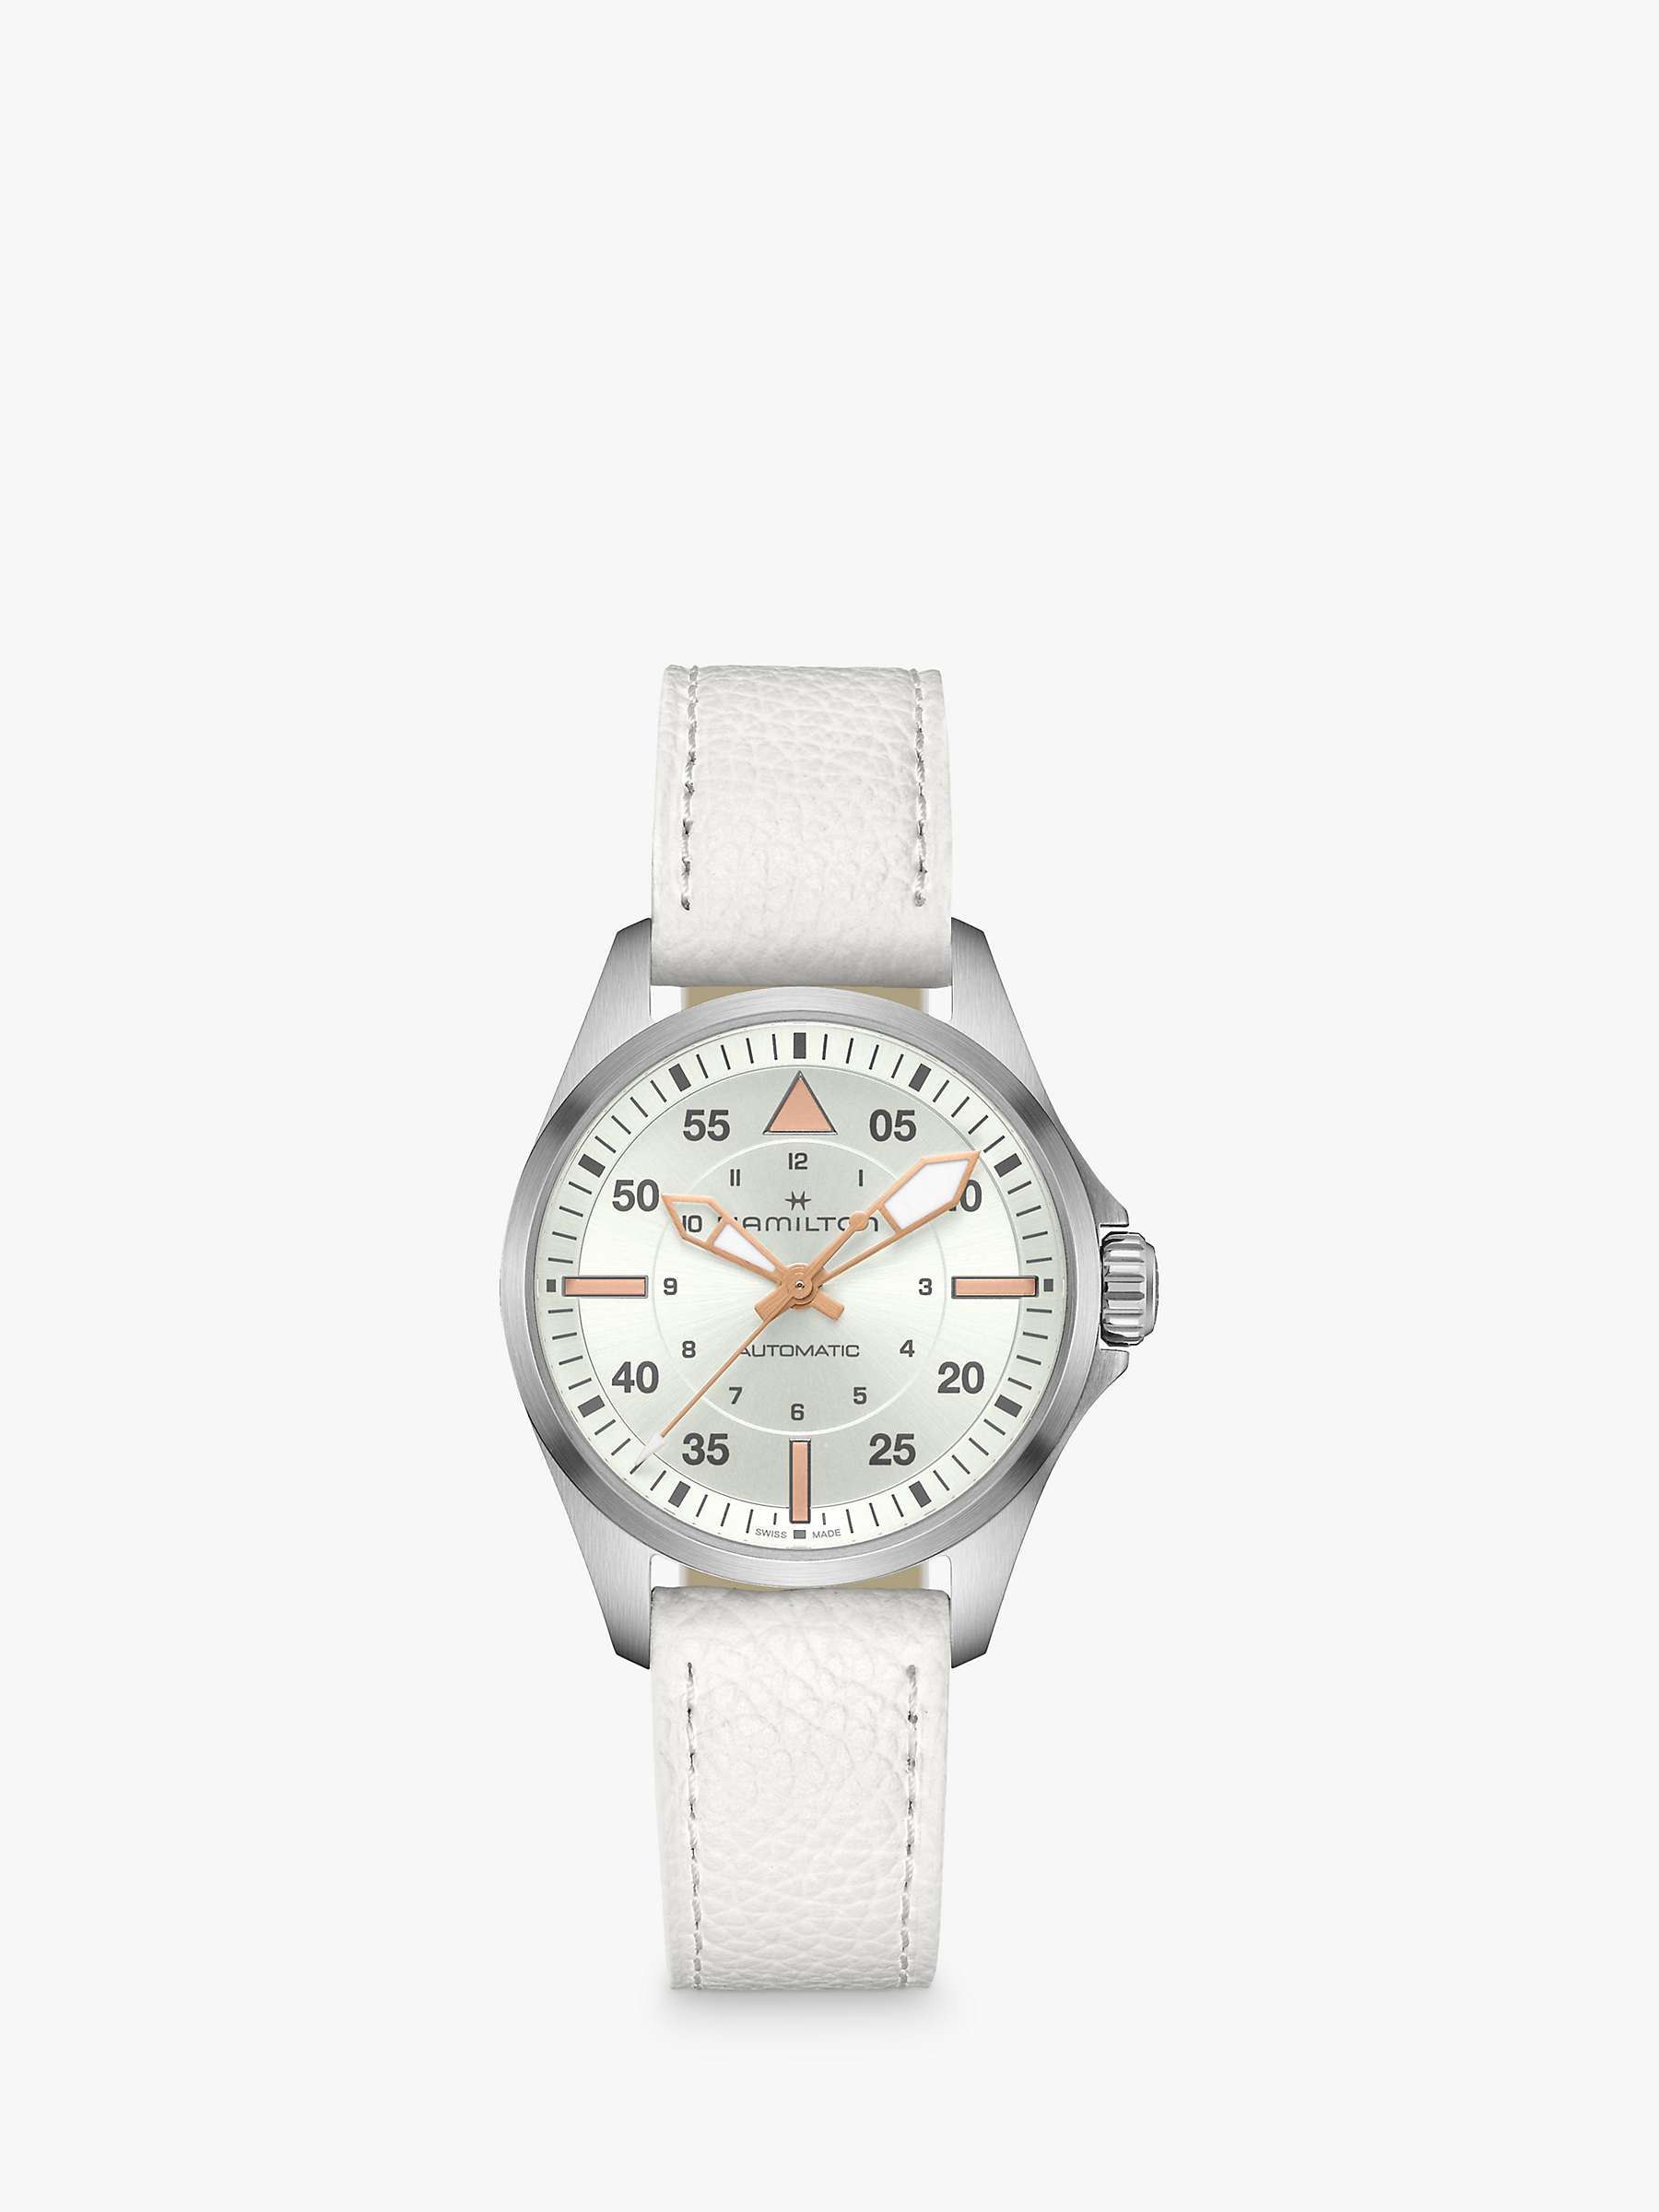 Buy Hamilton Women's Khaki Pilot Automatic Leather Strap Watch Online at johnlewis.com